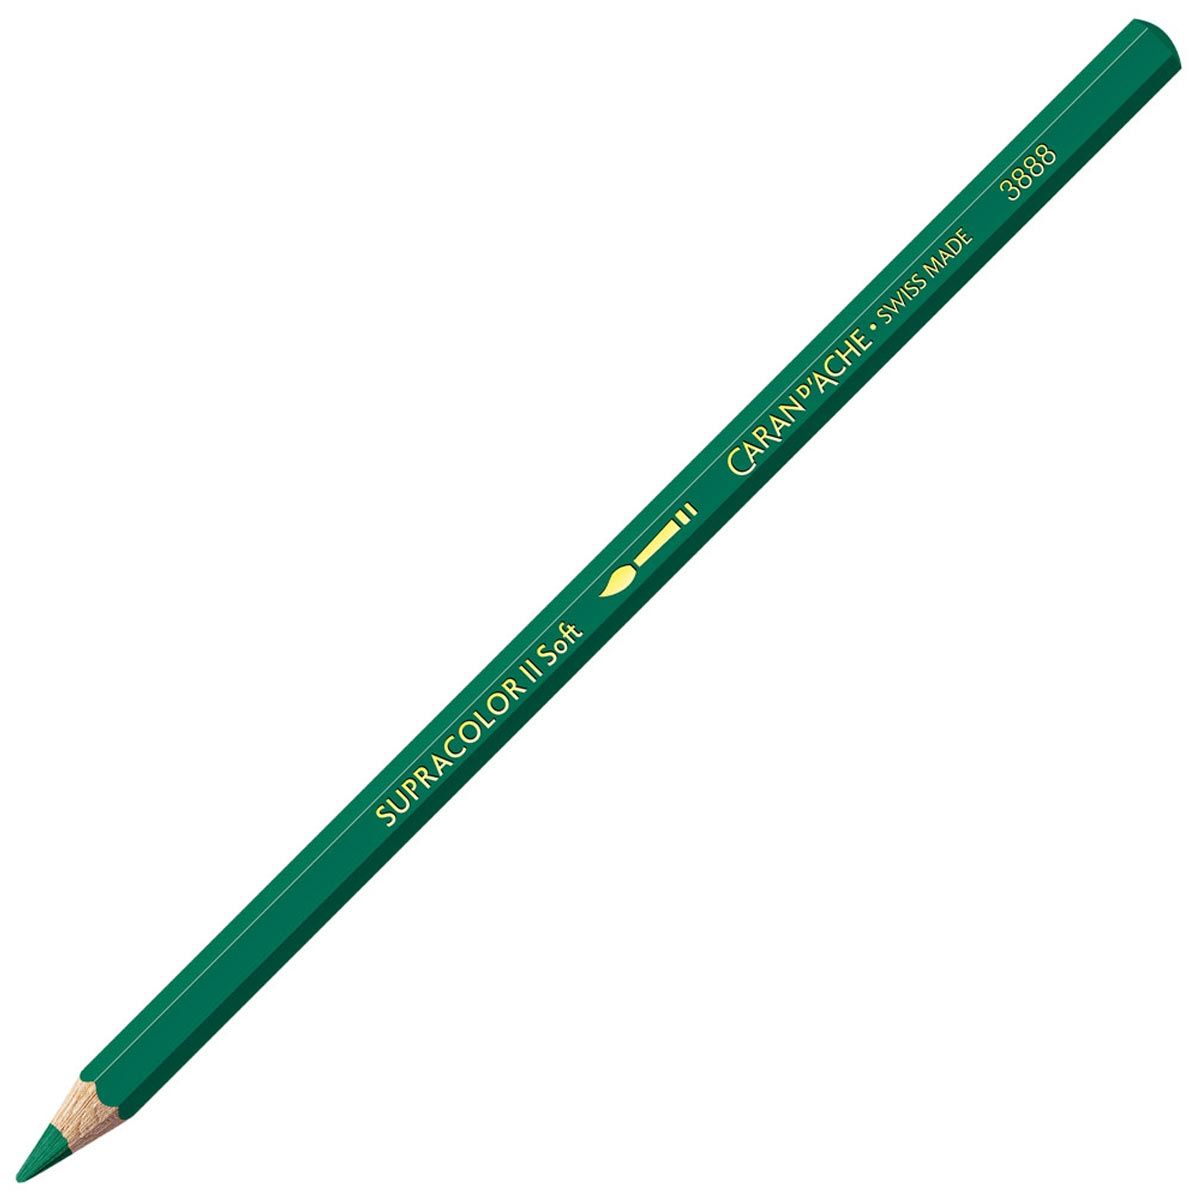 Caran d'Ache Supracolor ll Soft Aquarelle Pencil - Bluish Green 200